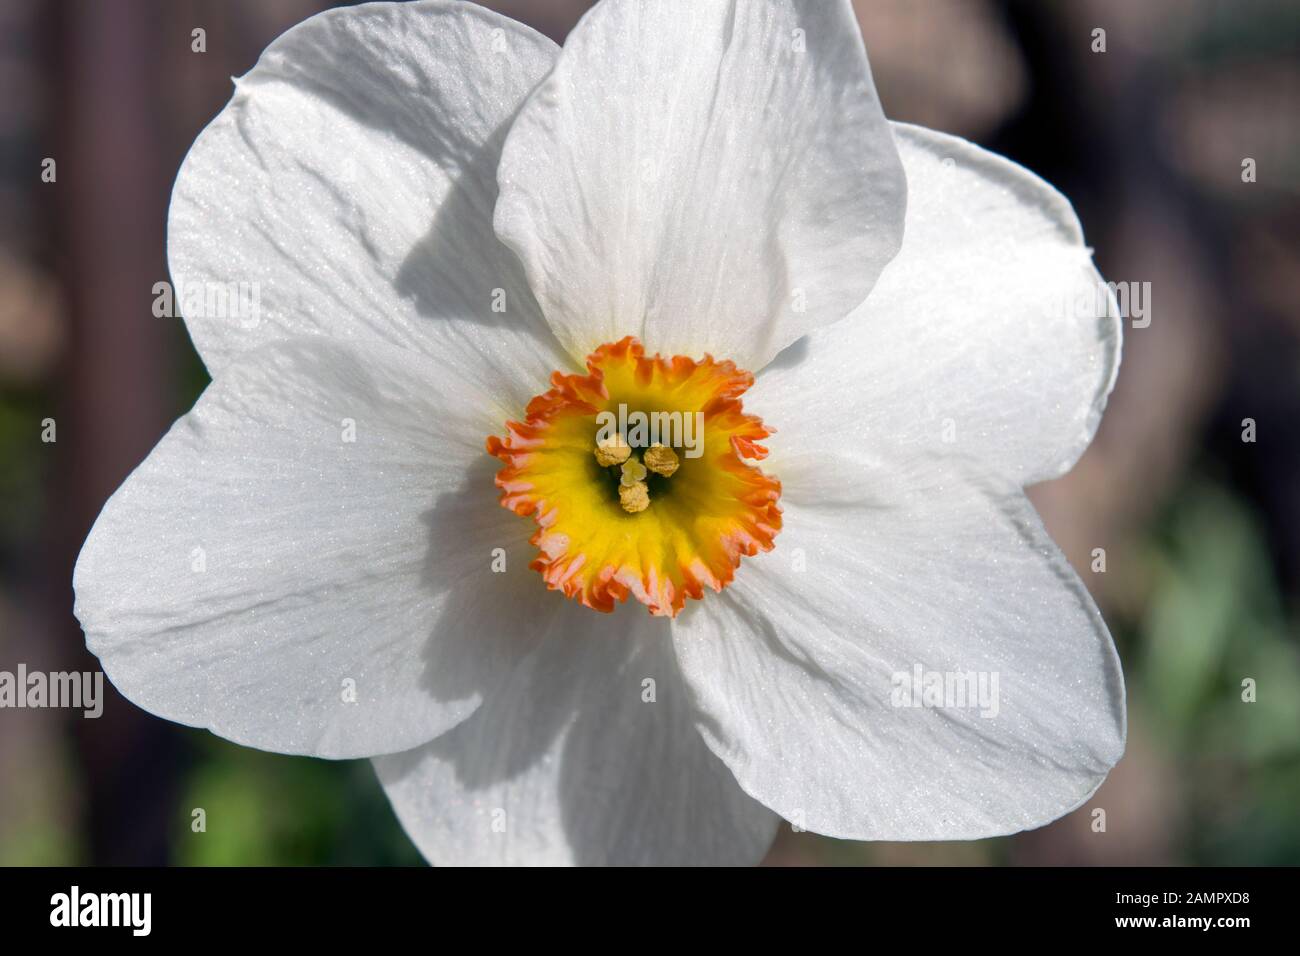 Belle fleur de printemps blanche pure photographiée en lumière naturelle. Il s'appelle Narcisse poeticus, le jonquille du poète ou les narcisse du poète. Banque D'Images